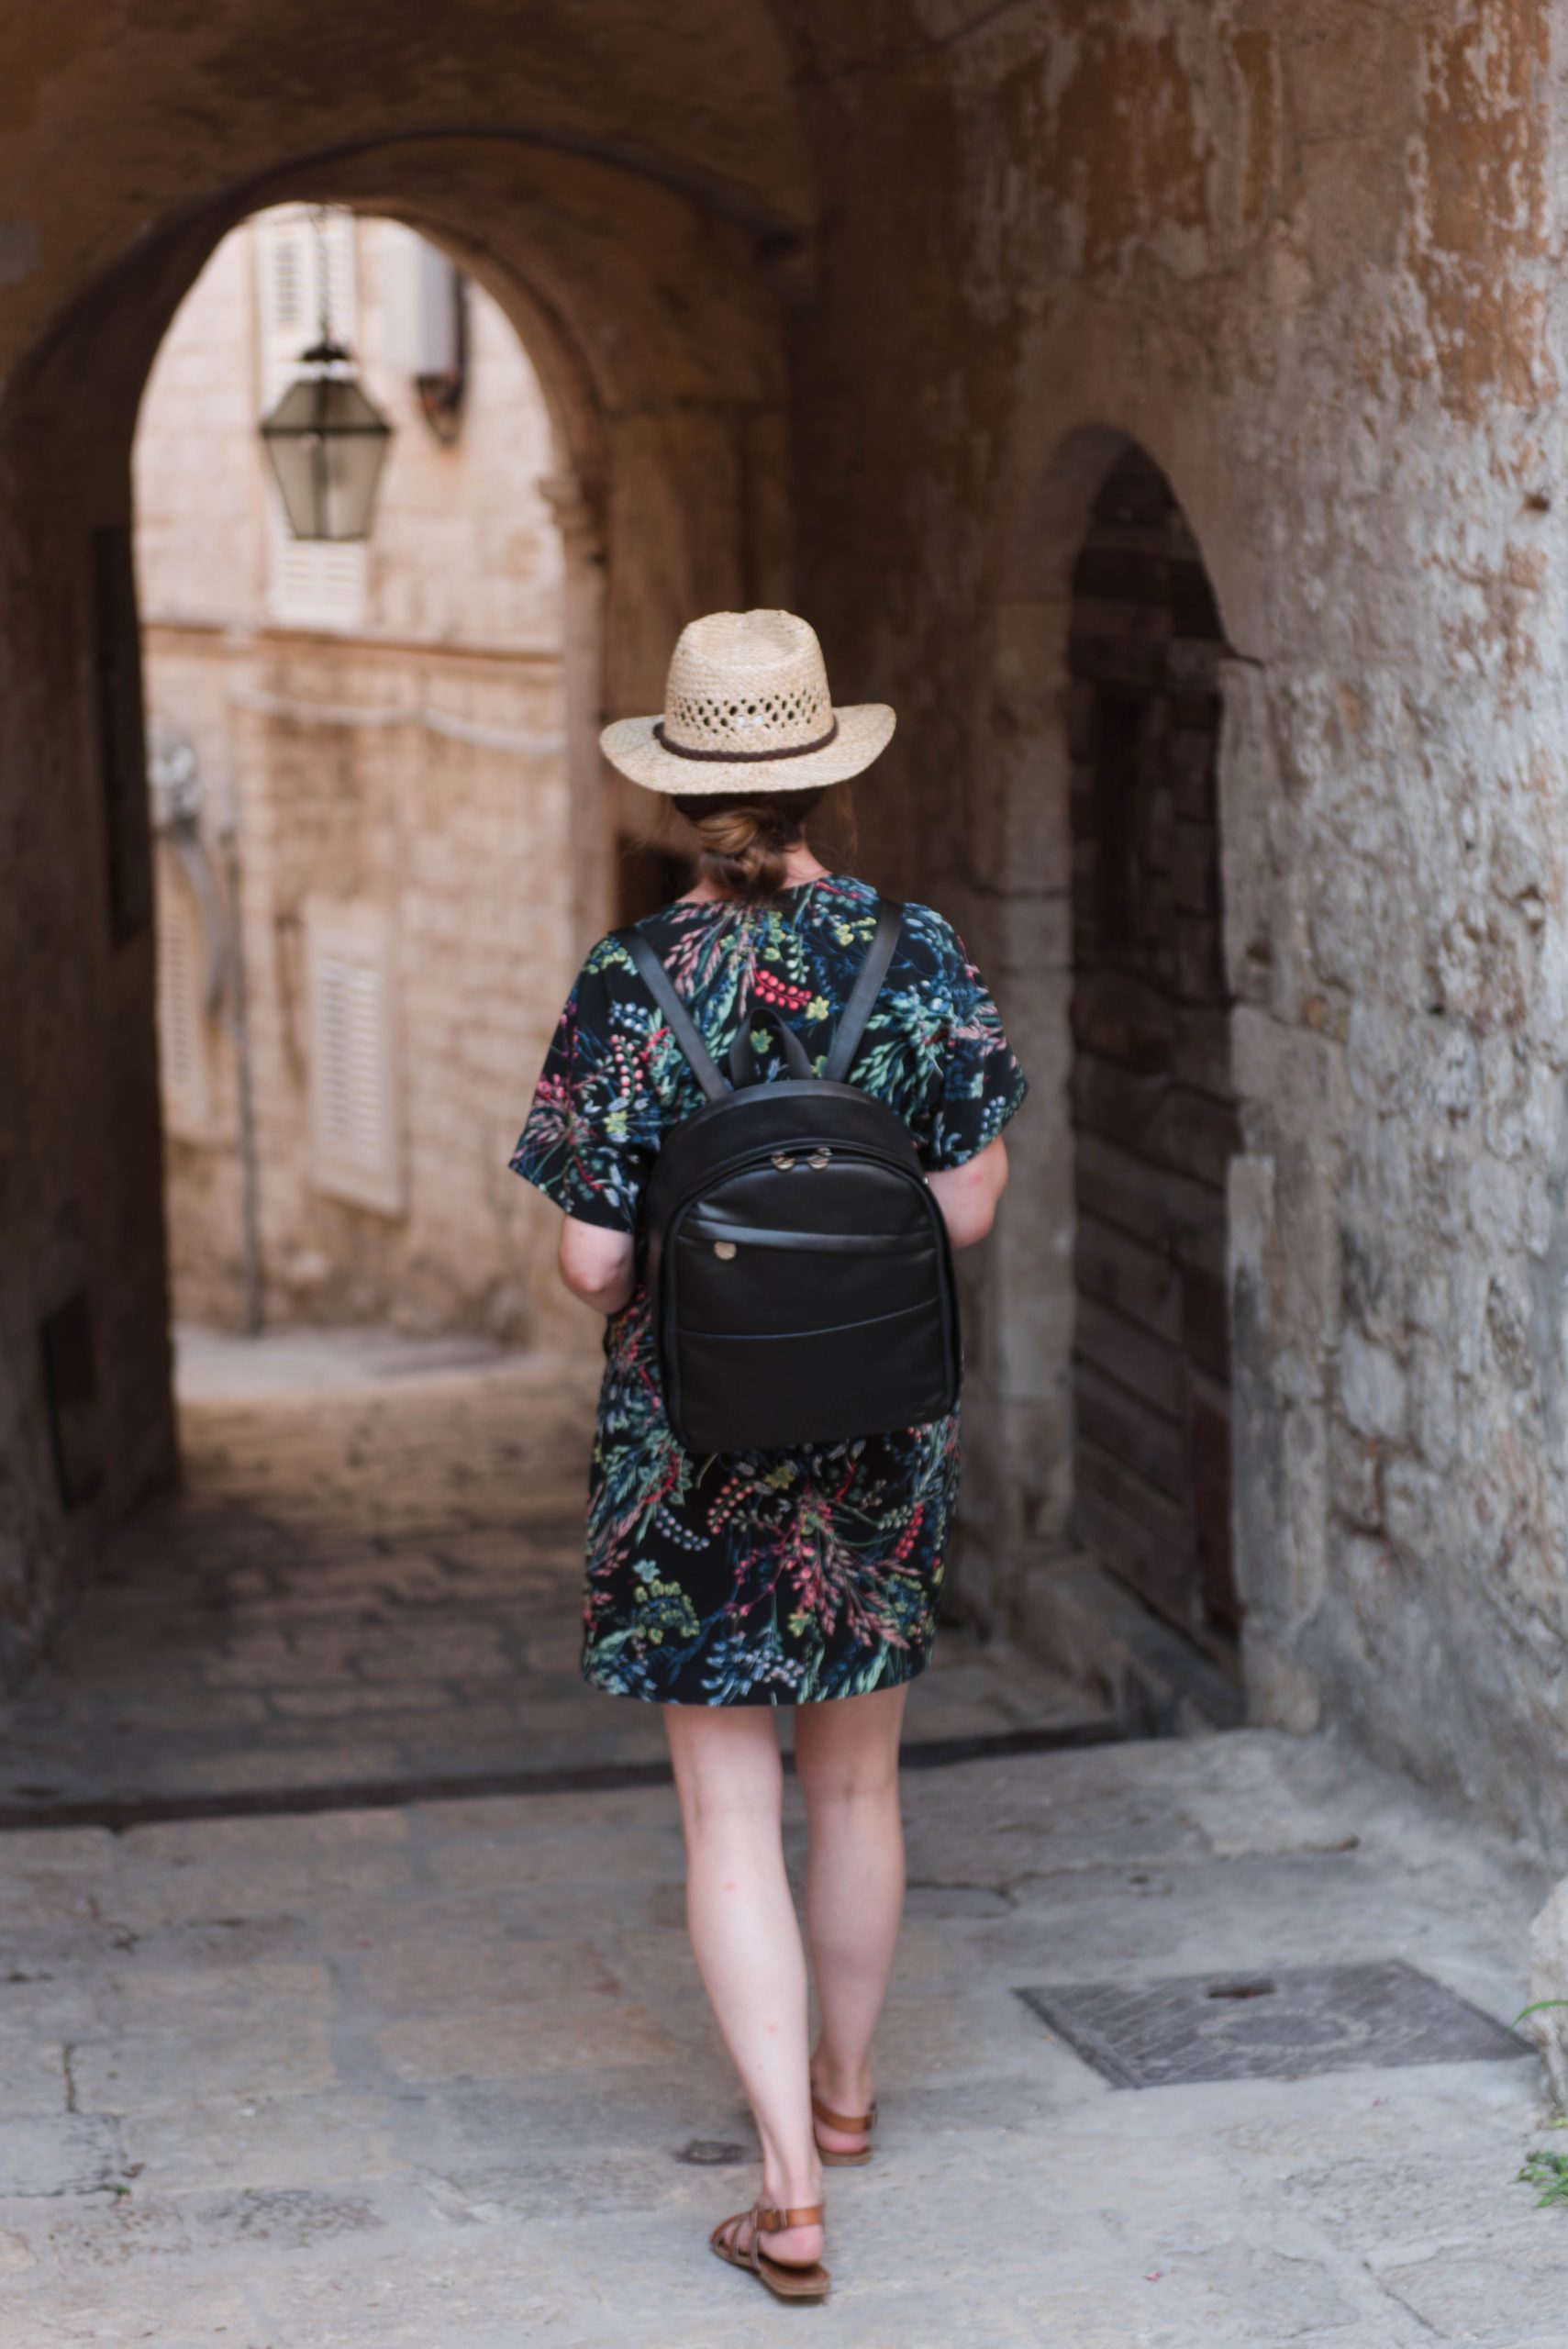 Exploring Dubrovnik